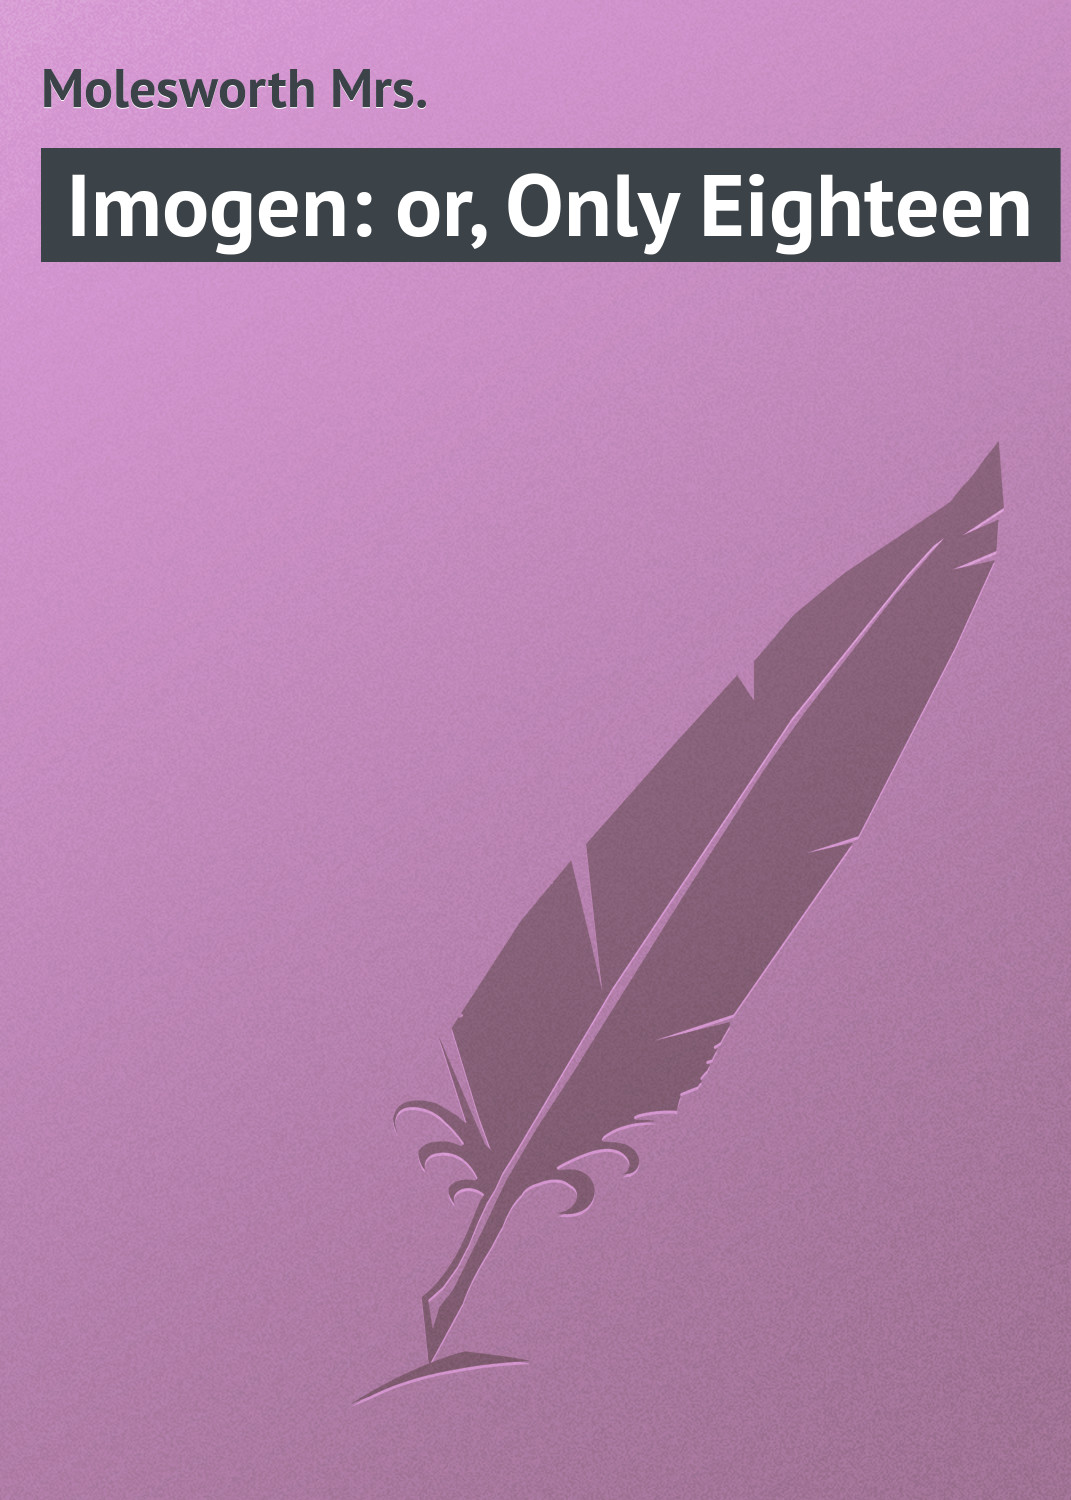 Книга Imogen: or, Only Eighteen из серии , созданная Mrs. Molesworth, может относится к жанру Зарубежная классика. Стоимость электронной книги Imogen: or, Only Eighteen с идентификатором 23166259 составляет 5.99 руб.